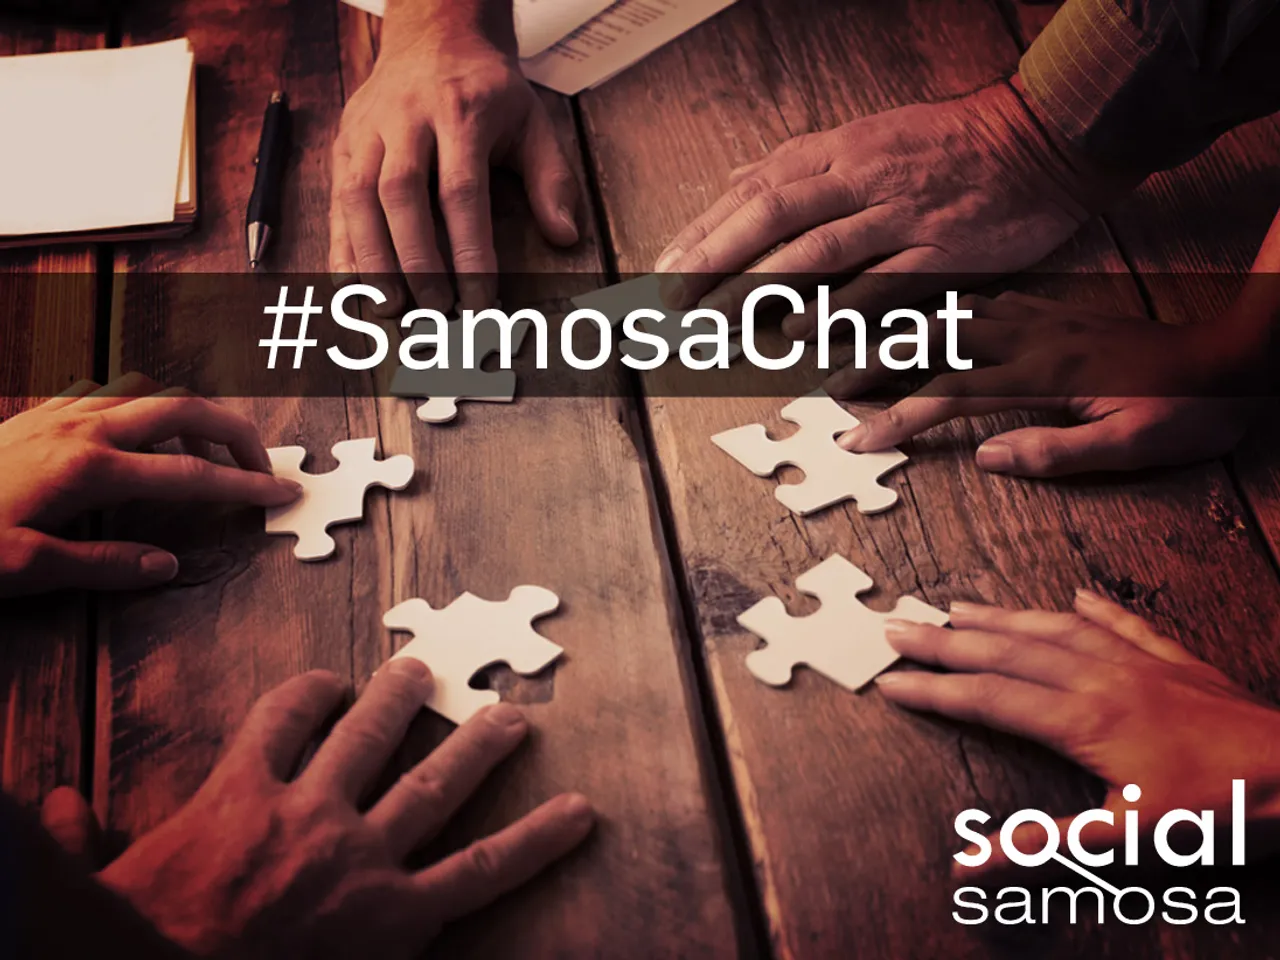 samosa-chat-social